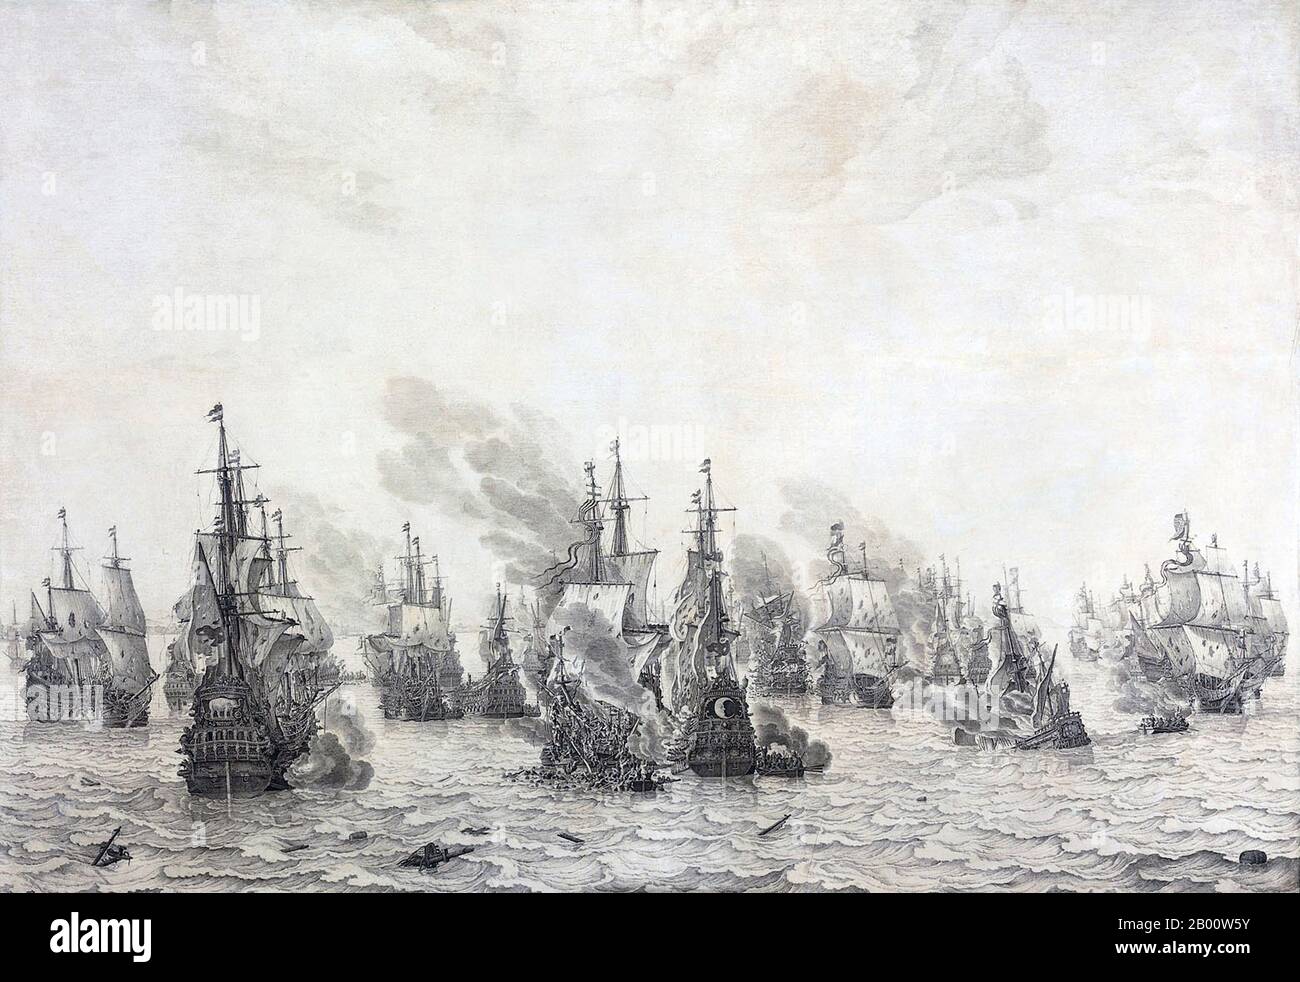 Pays-Bas/Italie: 'La bataille de Livourne'. Peinture à l'huile et à l'encre sur toile par Willem van de Velde The Elder (1611-1693), c. 1654-1655. La bataille navale de Leghorn (l'appel néerlandais la rencontre par le nom italien Livourne) a eu lieu le 14 mars (4 mars Old style) 1653, pendant la première guerre anglo-hollandaise, près de Leghorn/Livourne, Italie. C'était la victoire d'une flotte hollandaise sous le Commodore Johan van Galen sur un escadron anglais sous le capitaine Henry Appleton. Par la suite, une flotte anglaise sous la direction du capitaine Richard Badiley, que Appleton avait tenté de rejoindre, est venue mais a été surnumérotée et a fui. Banque D'Images